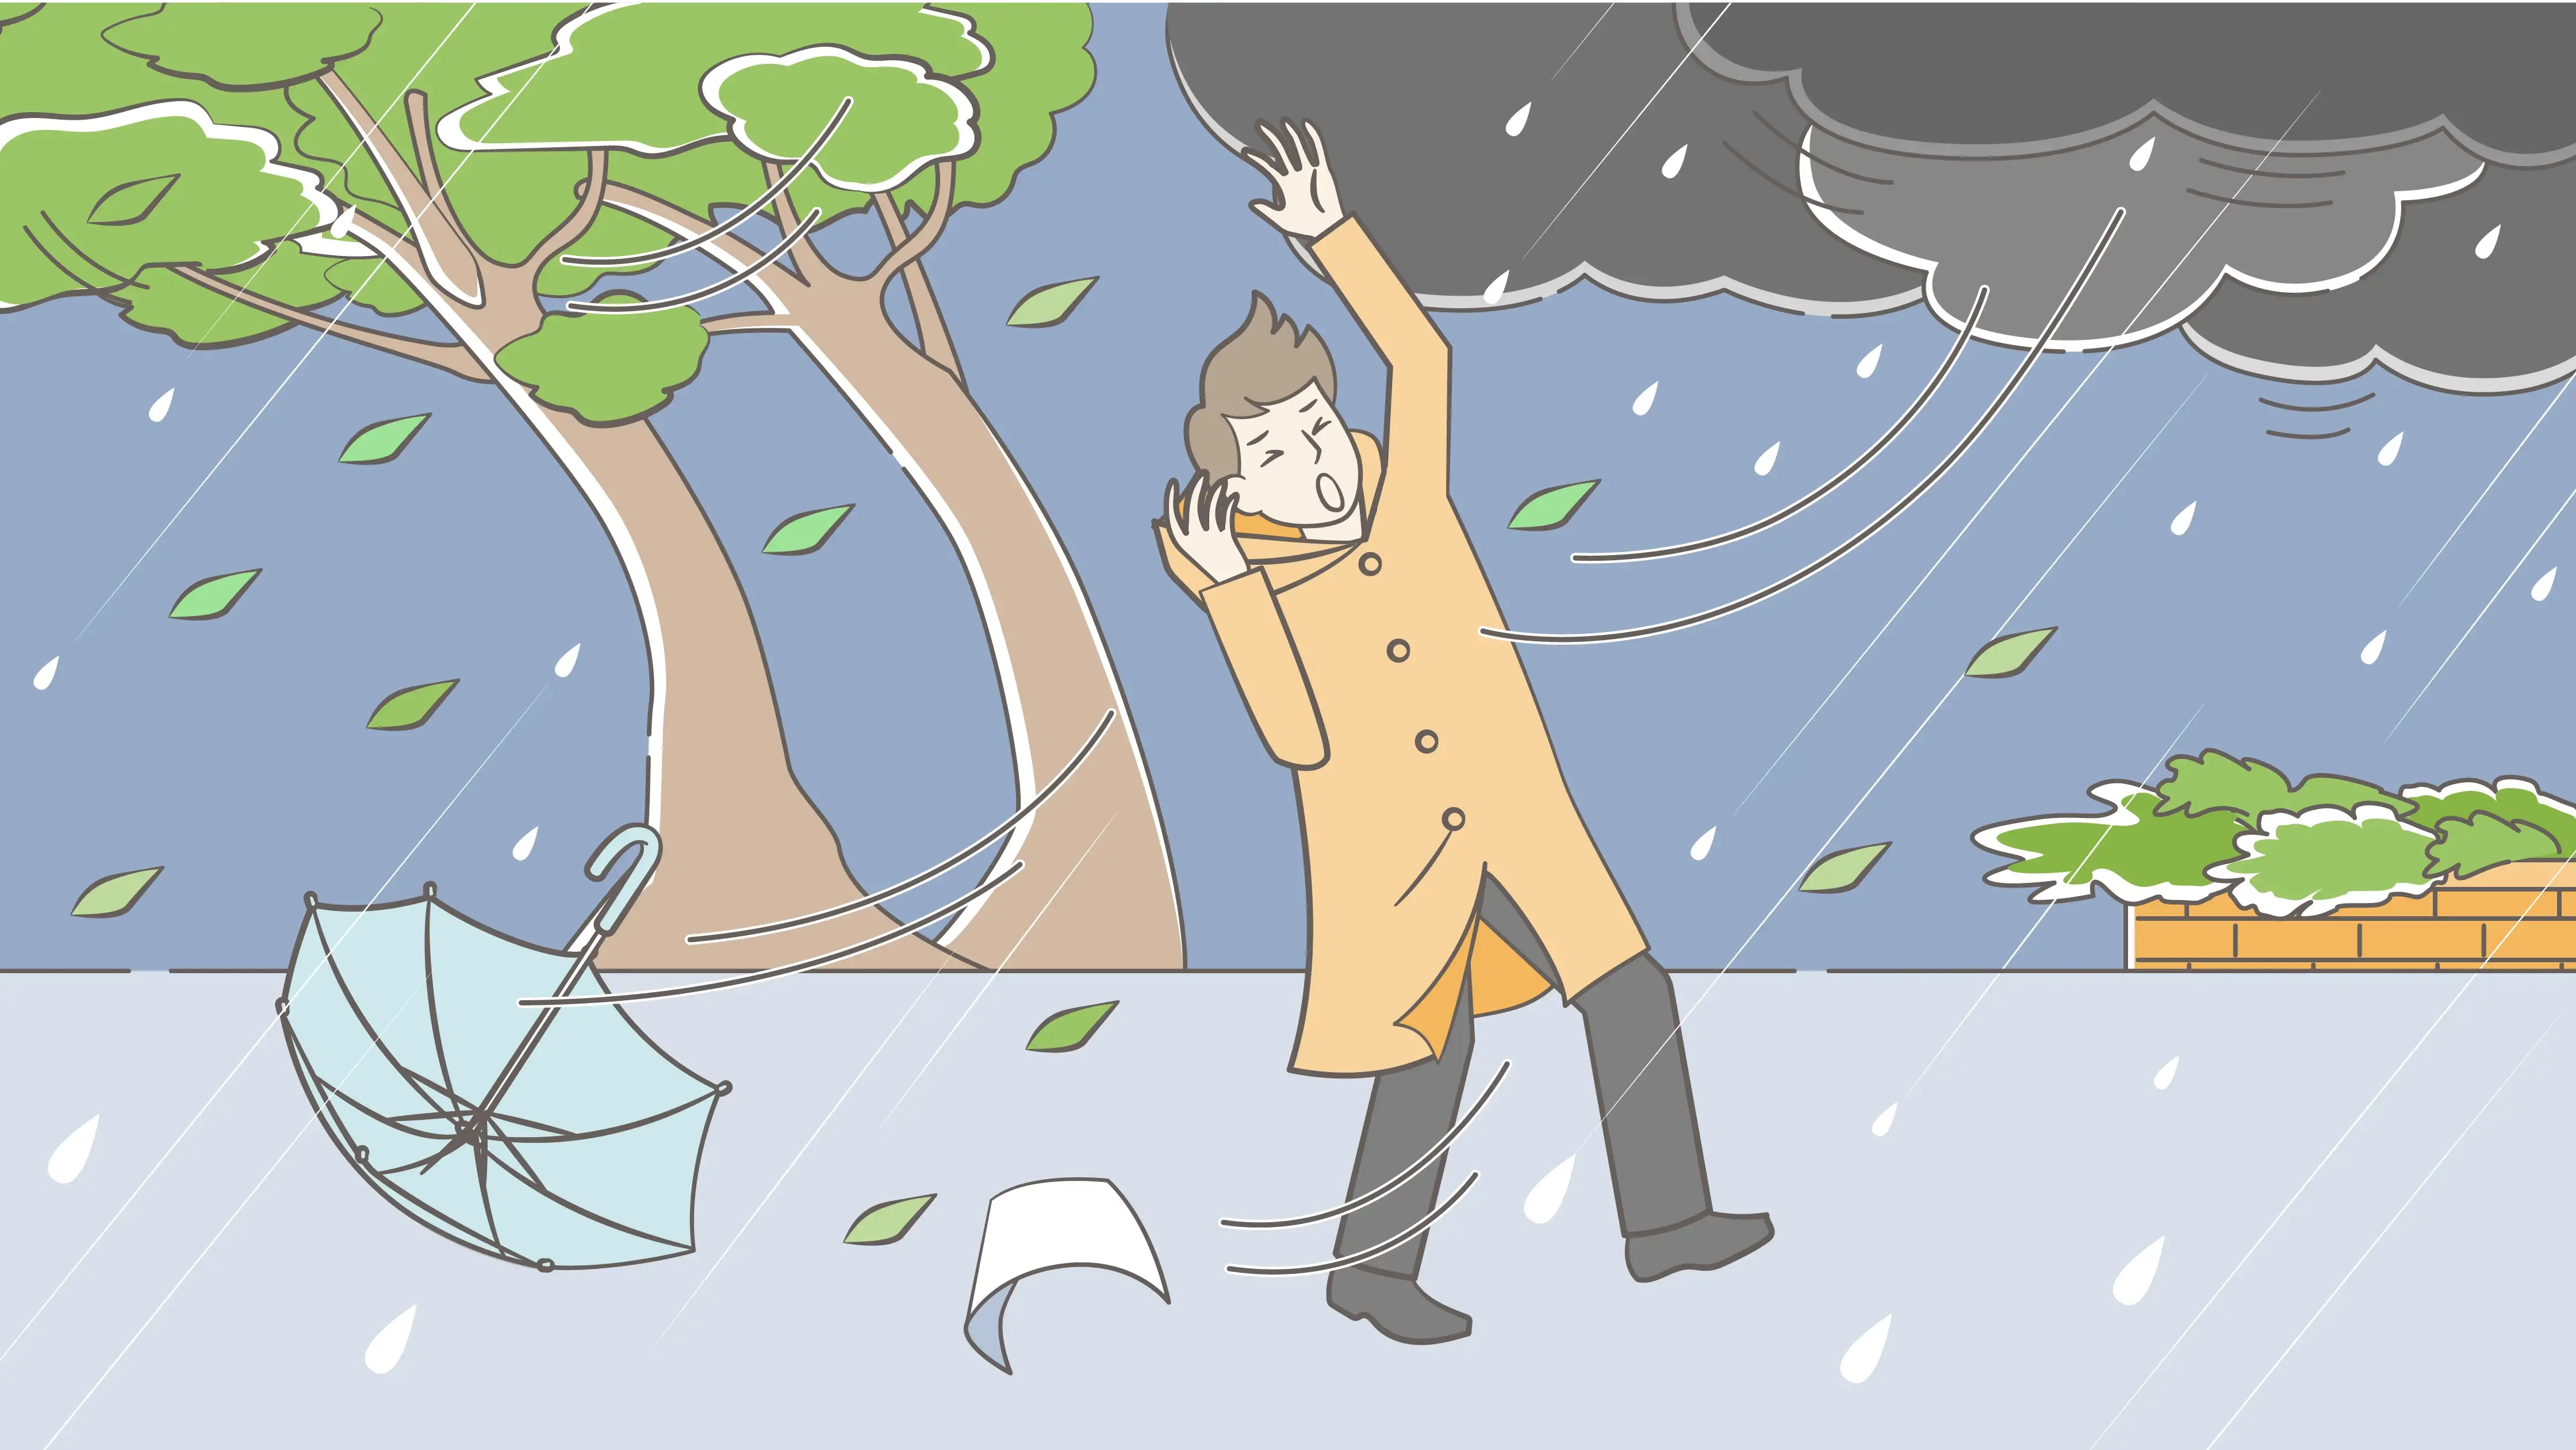 暴風雨の中を傘をさして歩く男性。強風で木の枝がなびき、傘が飛ばされそうになっている。